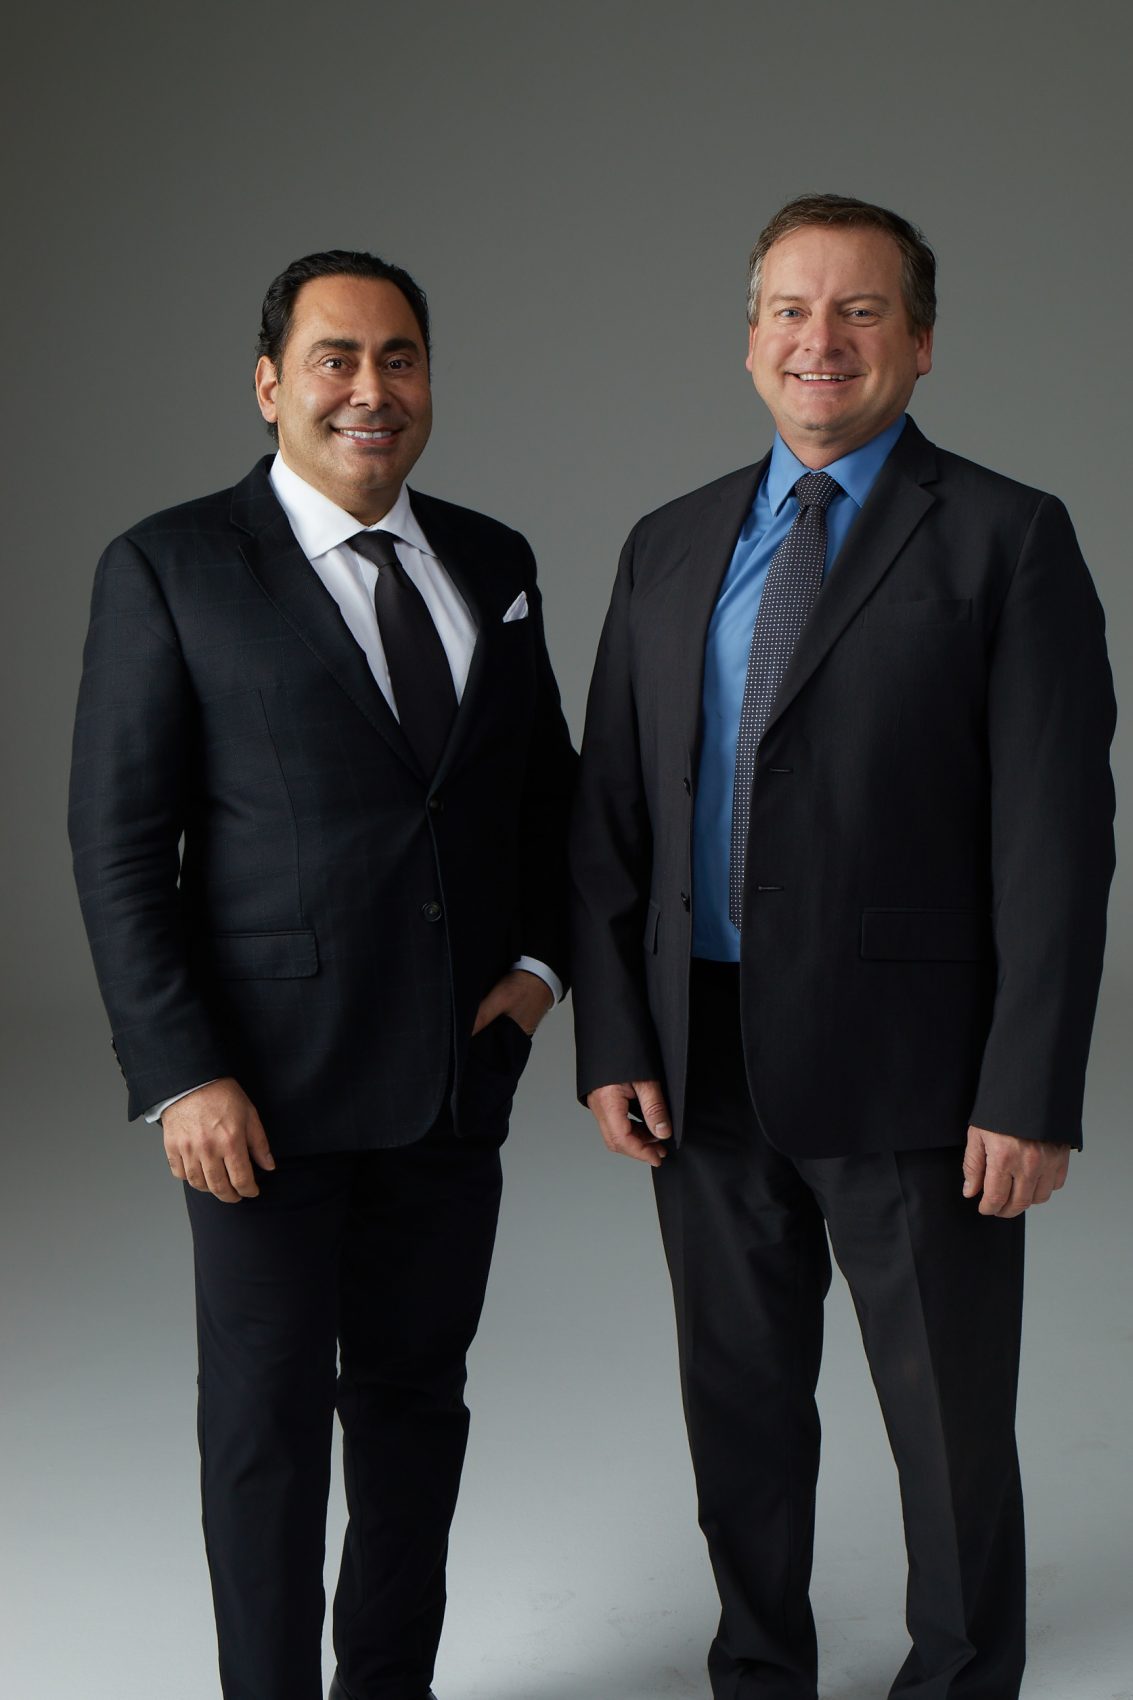 Dr. Daniel Yamini and Dr. Steven Svehlak, Los Angeles Top Surgeons